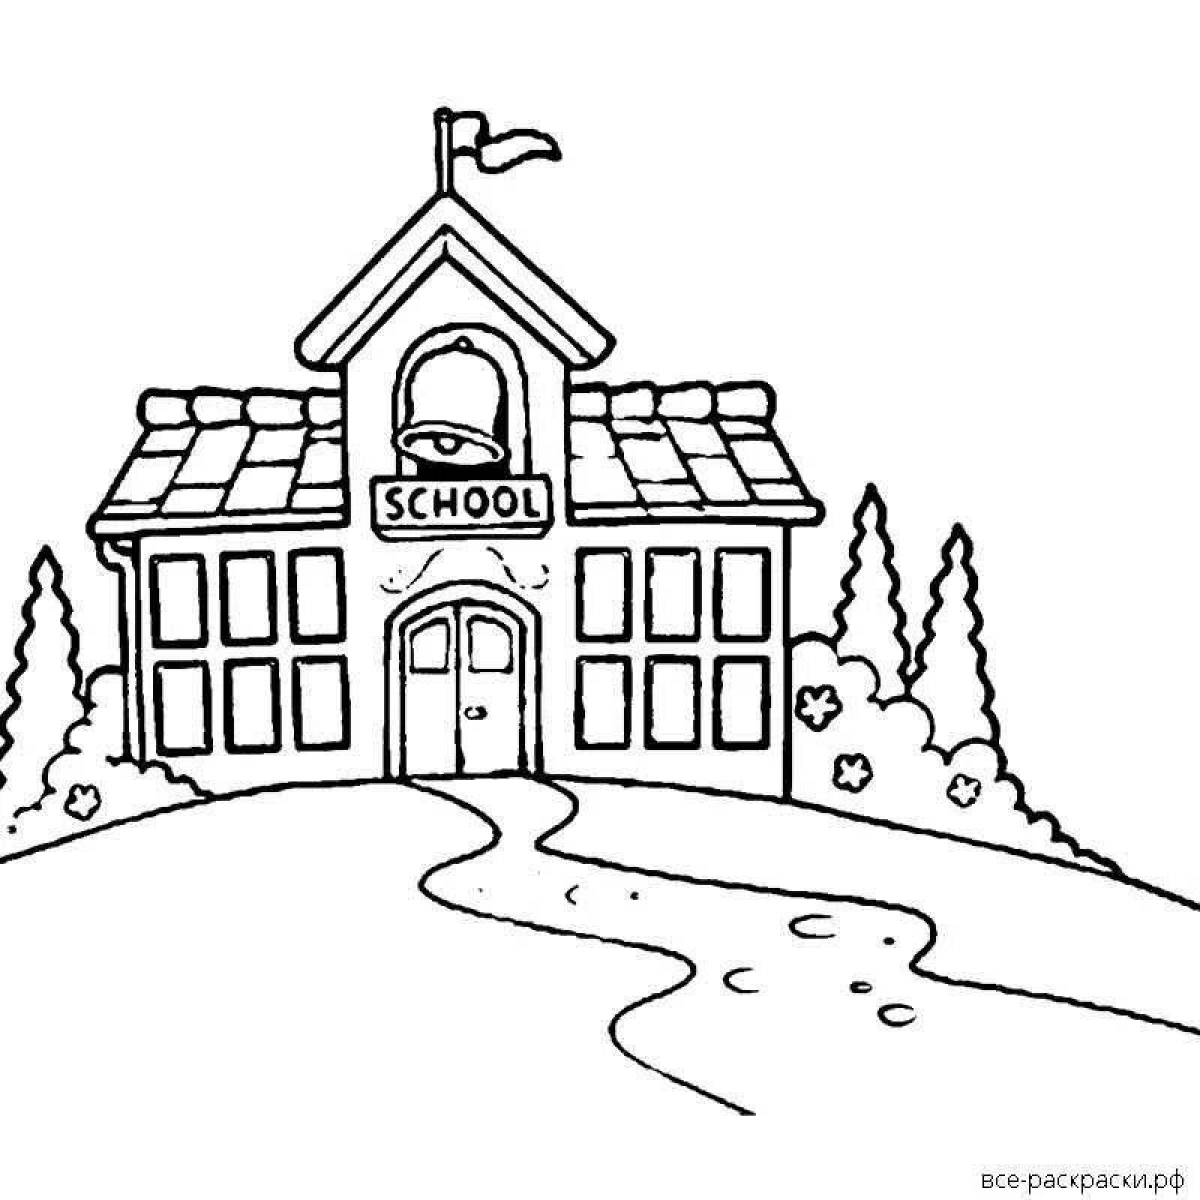 Fairytale school building coloring page